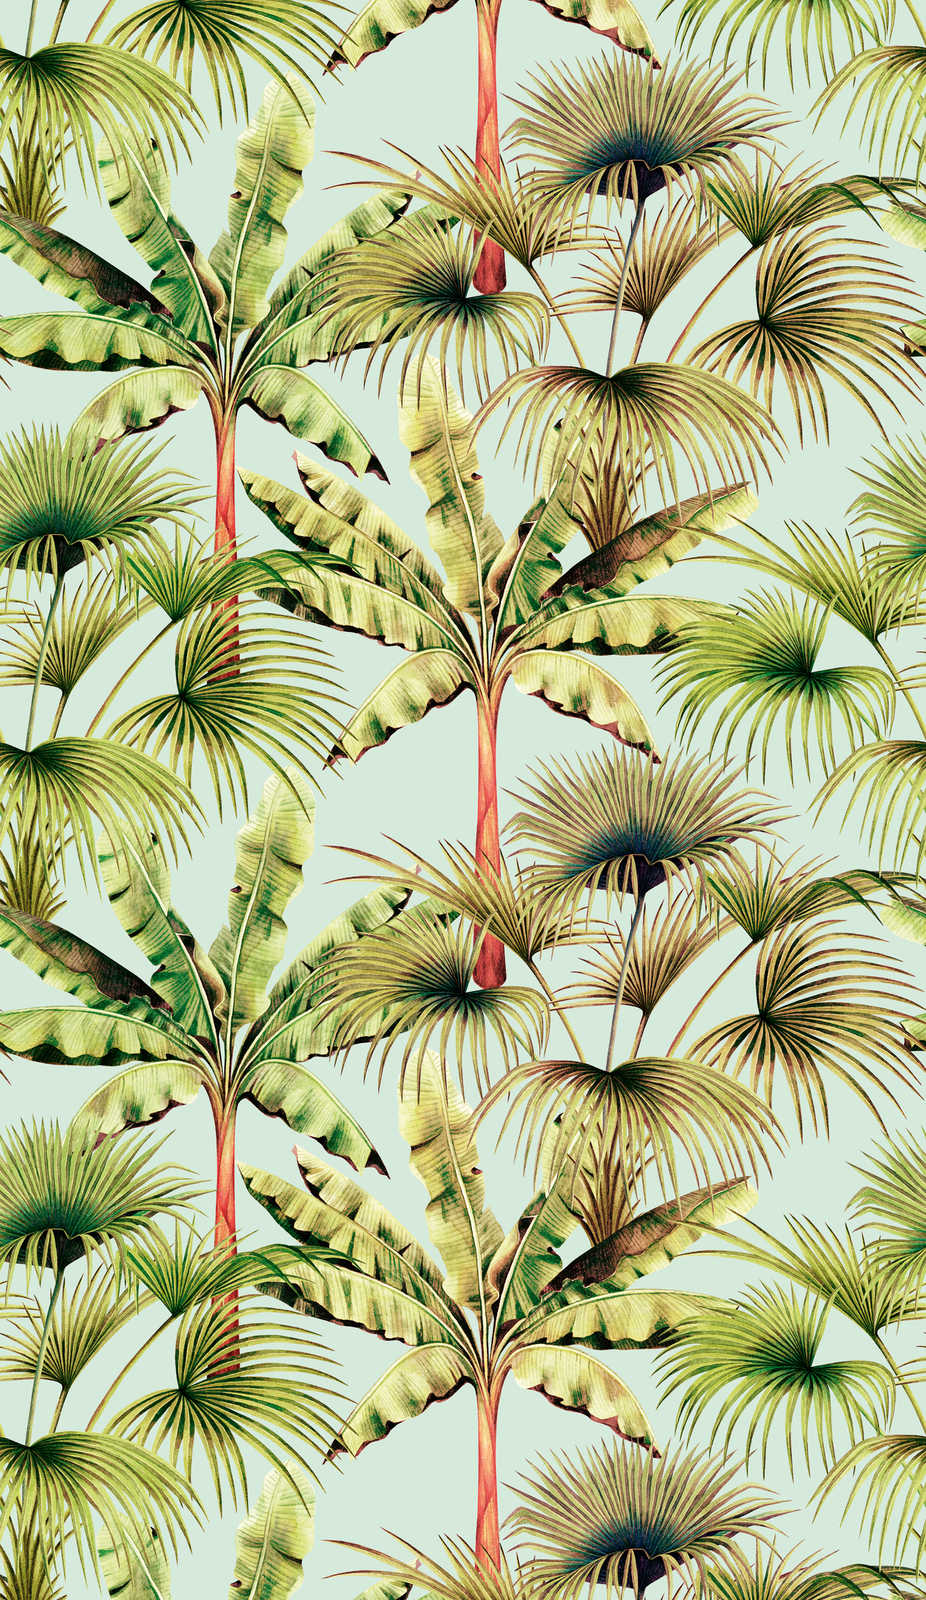             Bunte Vliestapete mit Blättermuster – Hellblau, Grün, Rot
        